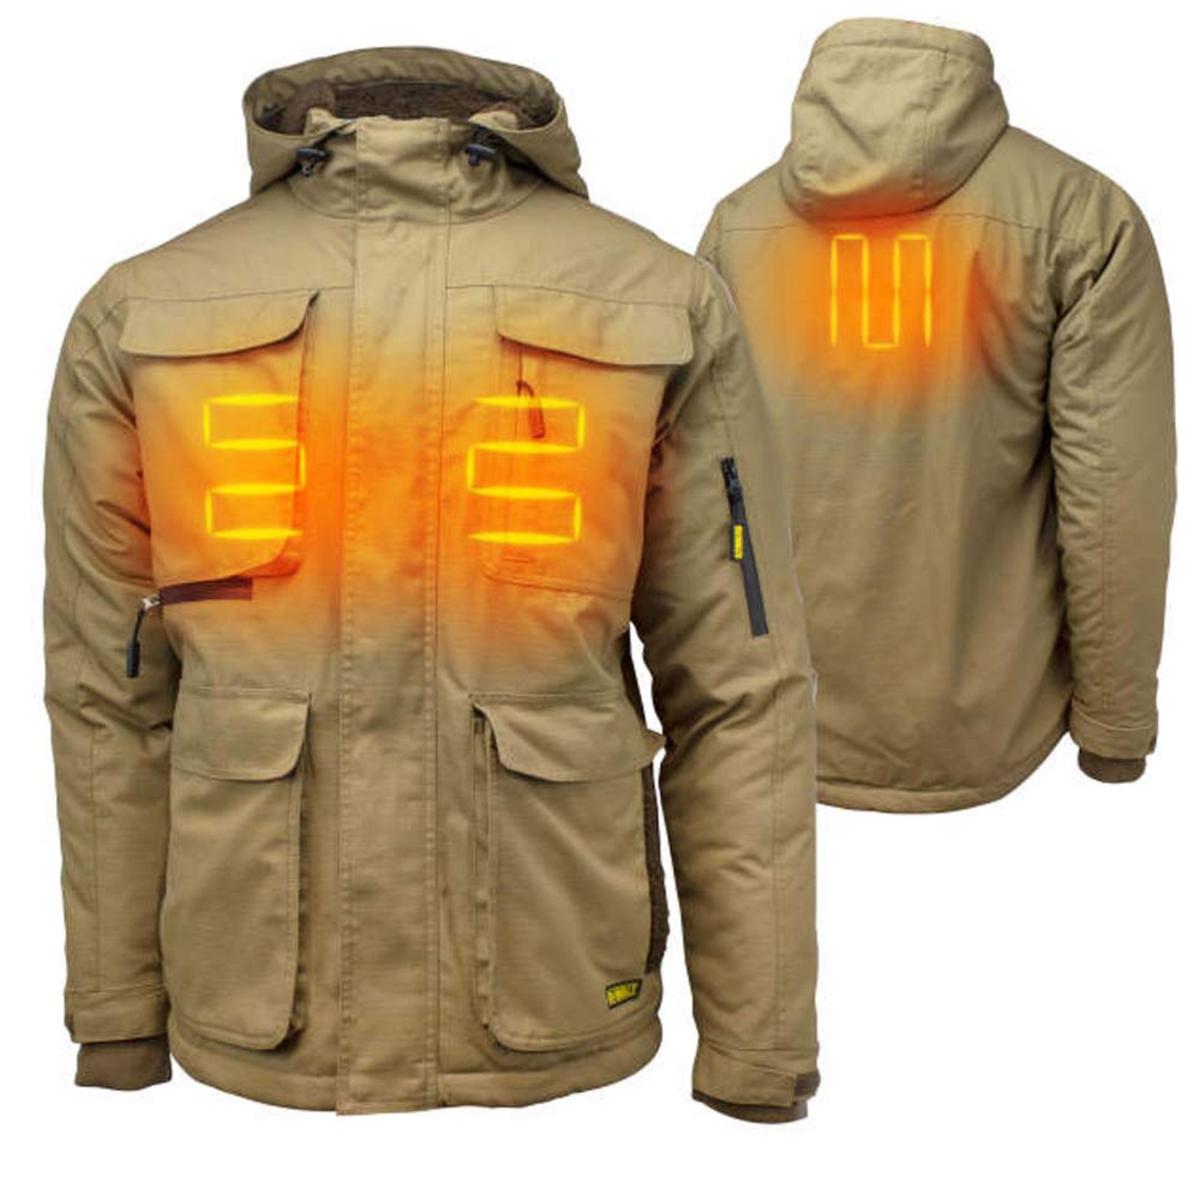 DeWalt Men's Heavy Duty Ripstop Heated Jacket with Battery